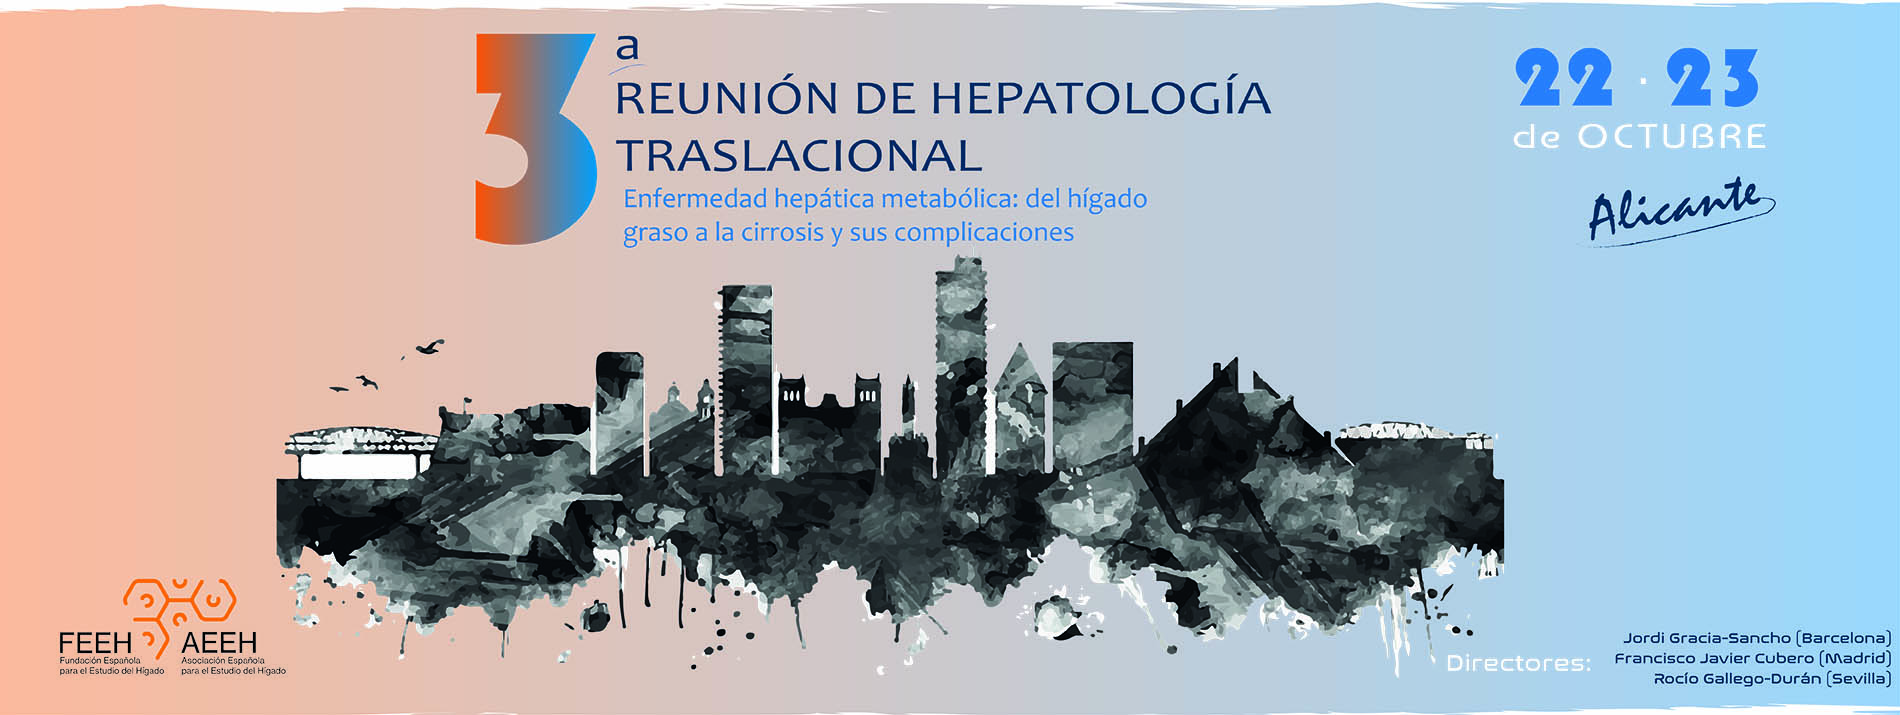 3ª Reunión de hepatología translacional AEEH